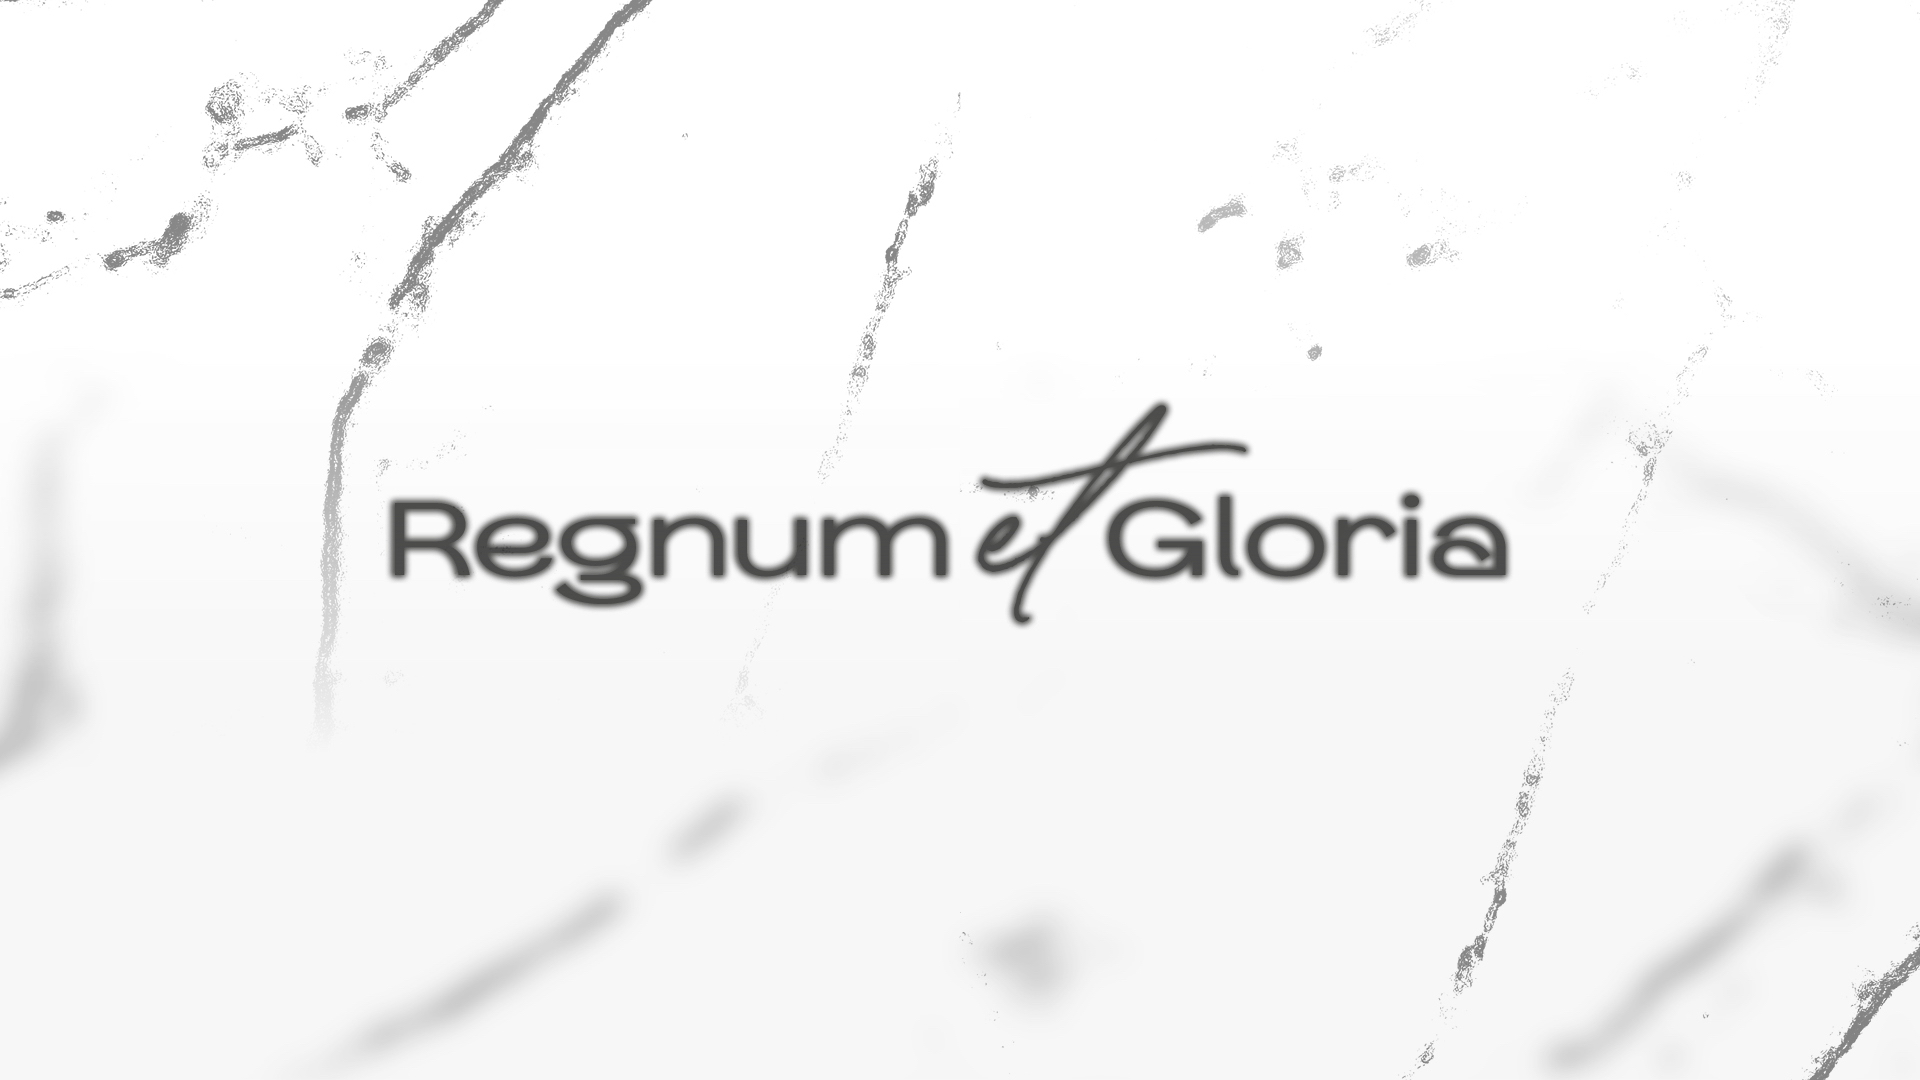 1015-regnum et gloria-3